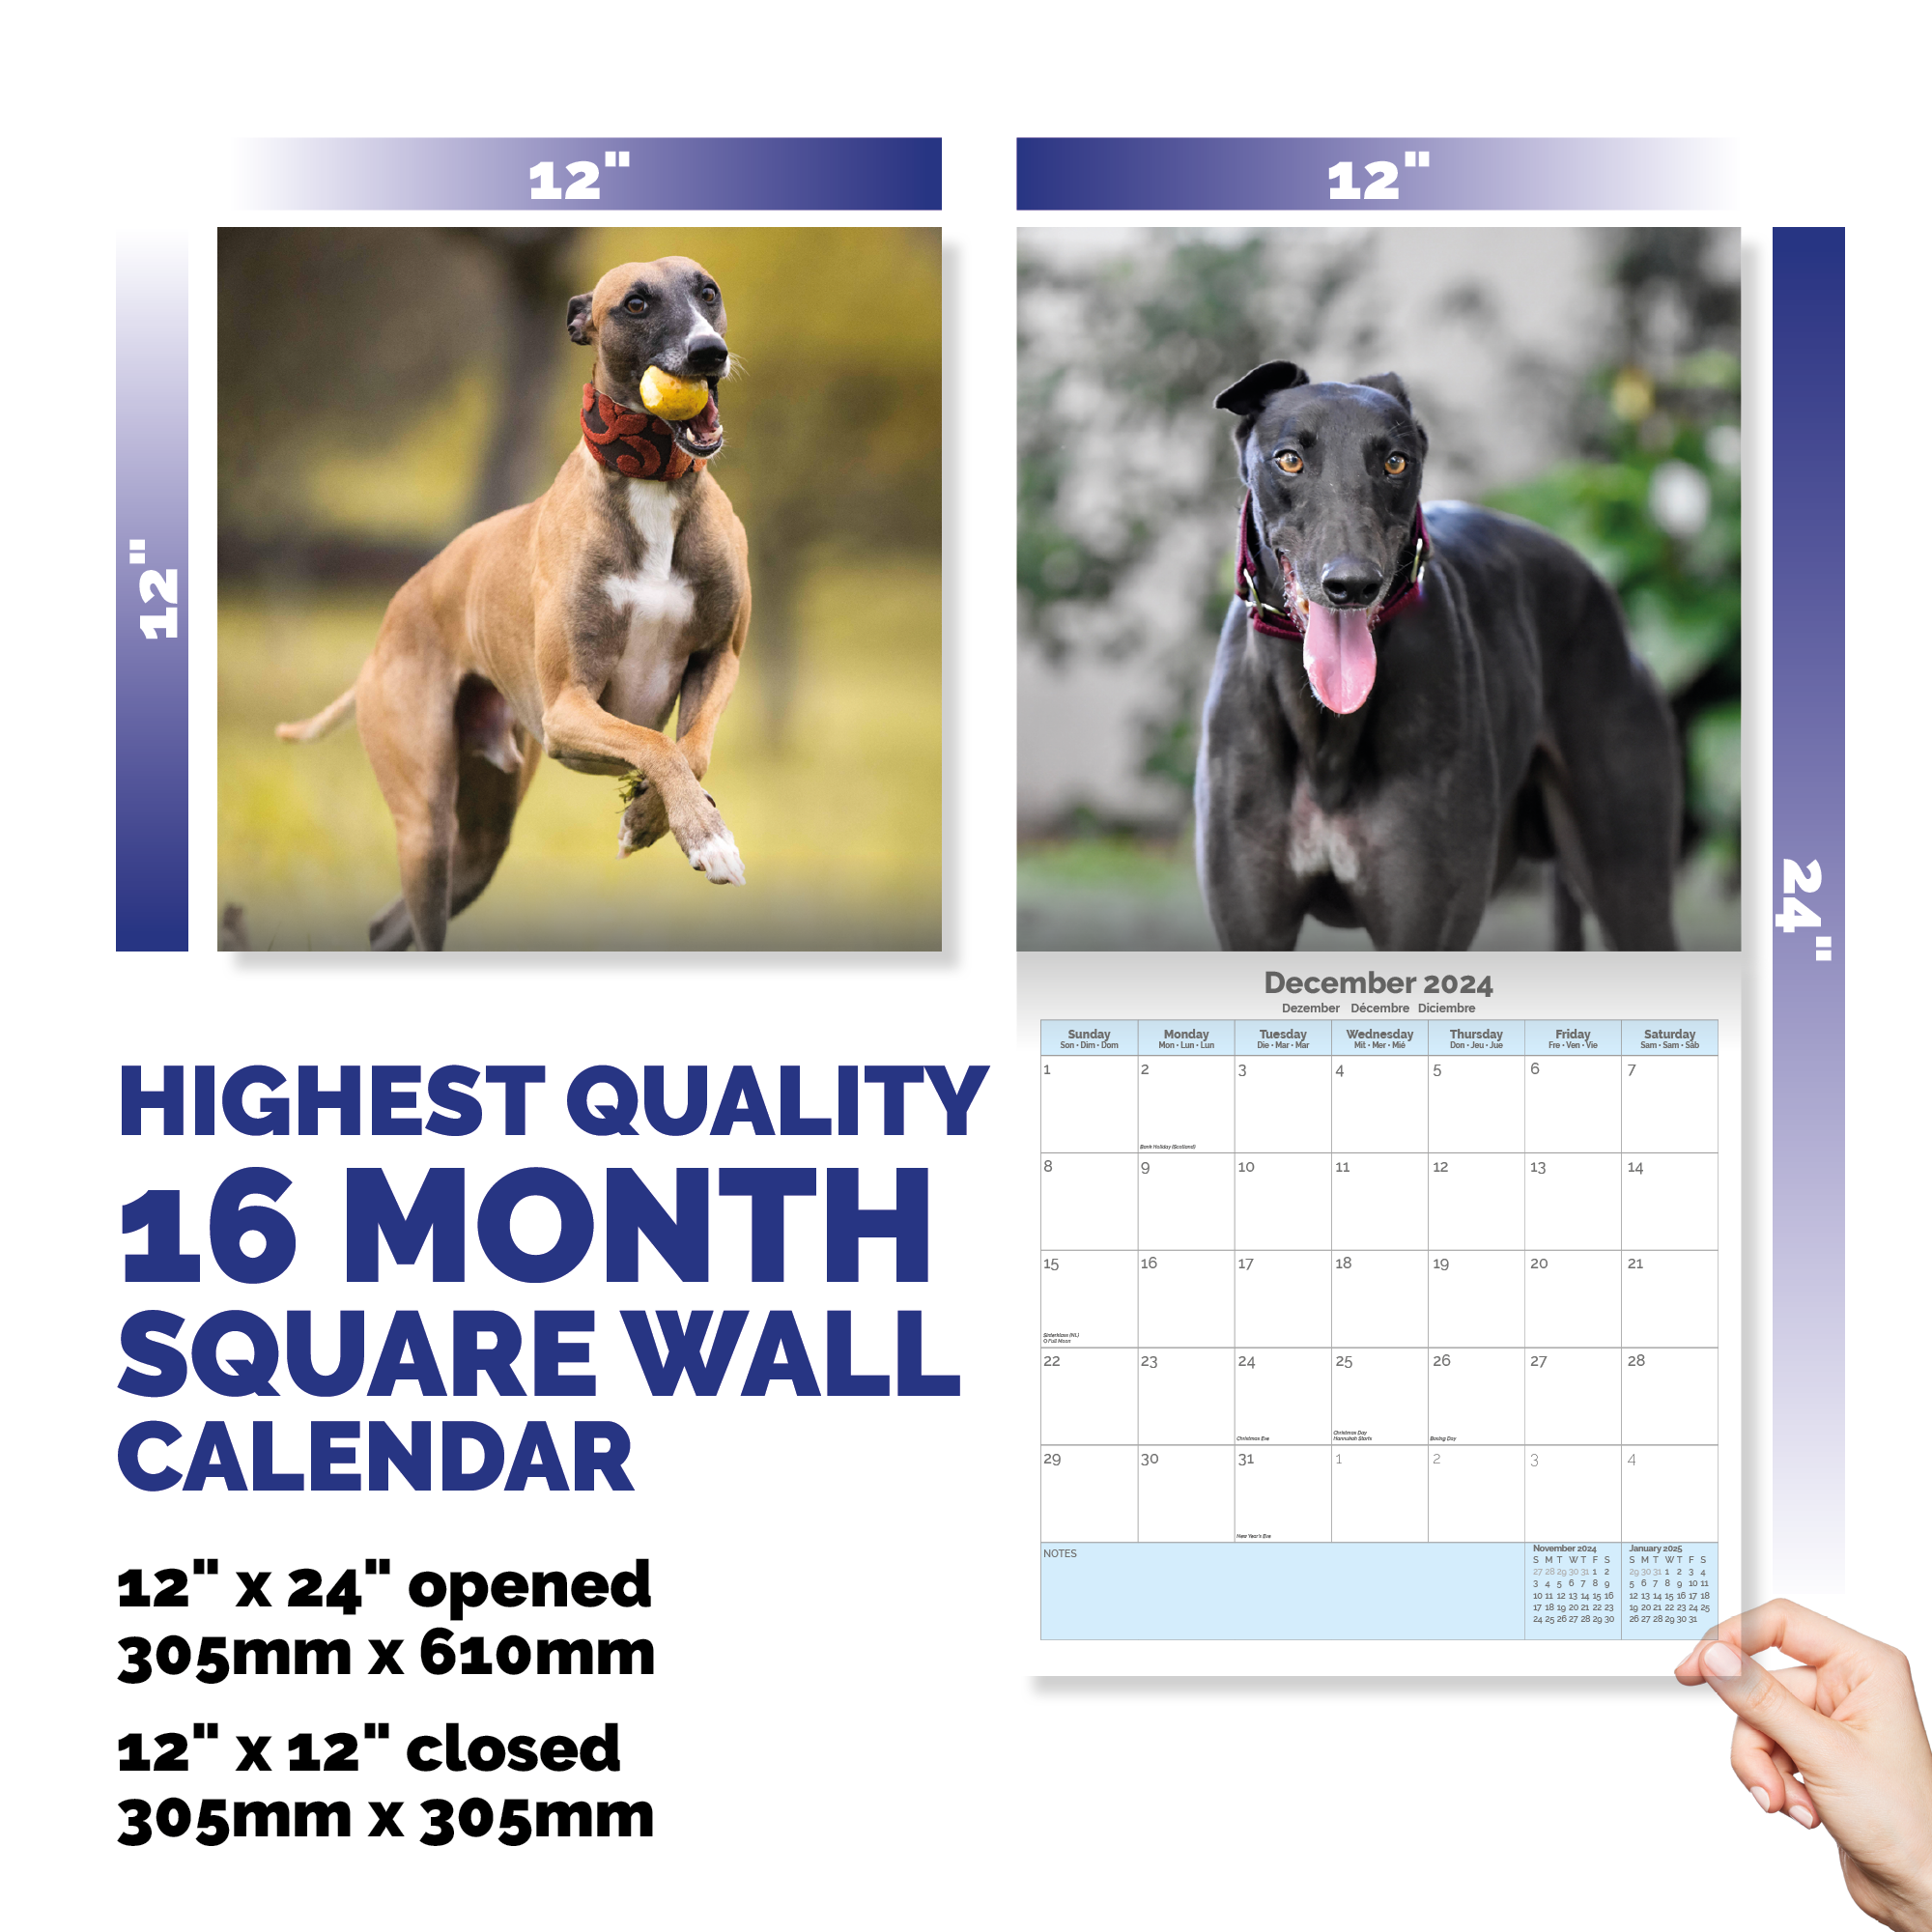 Greyhound Calendar 2024